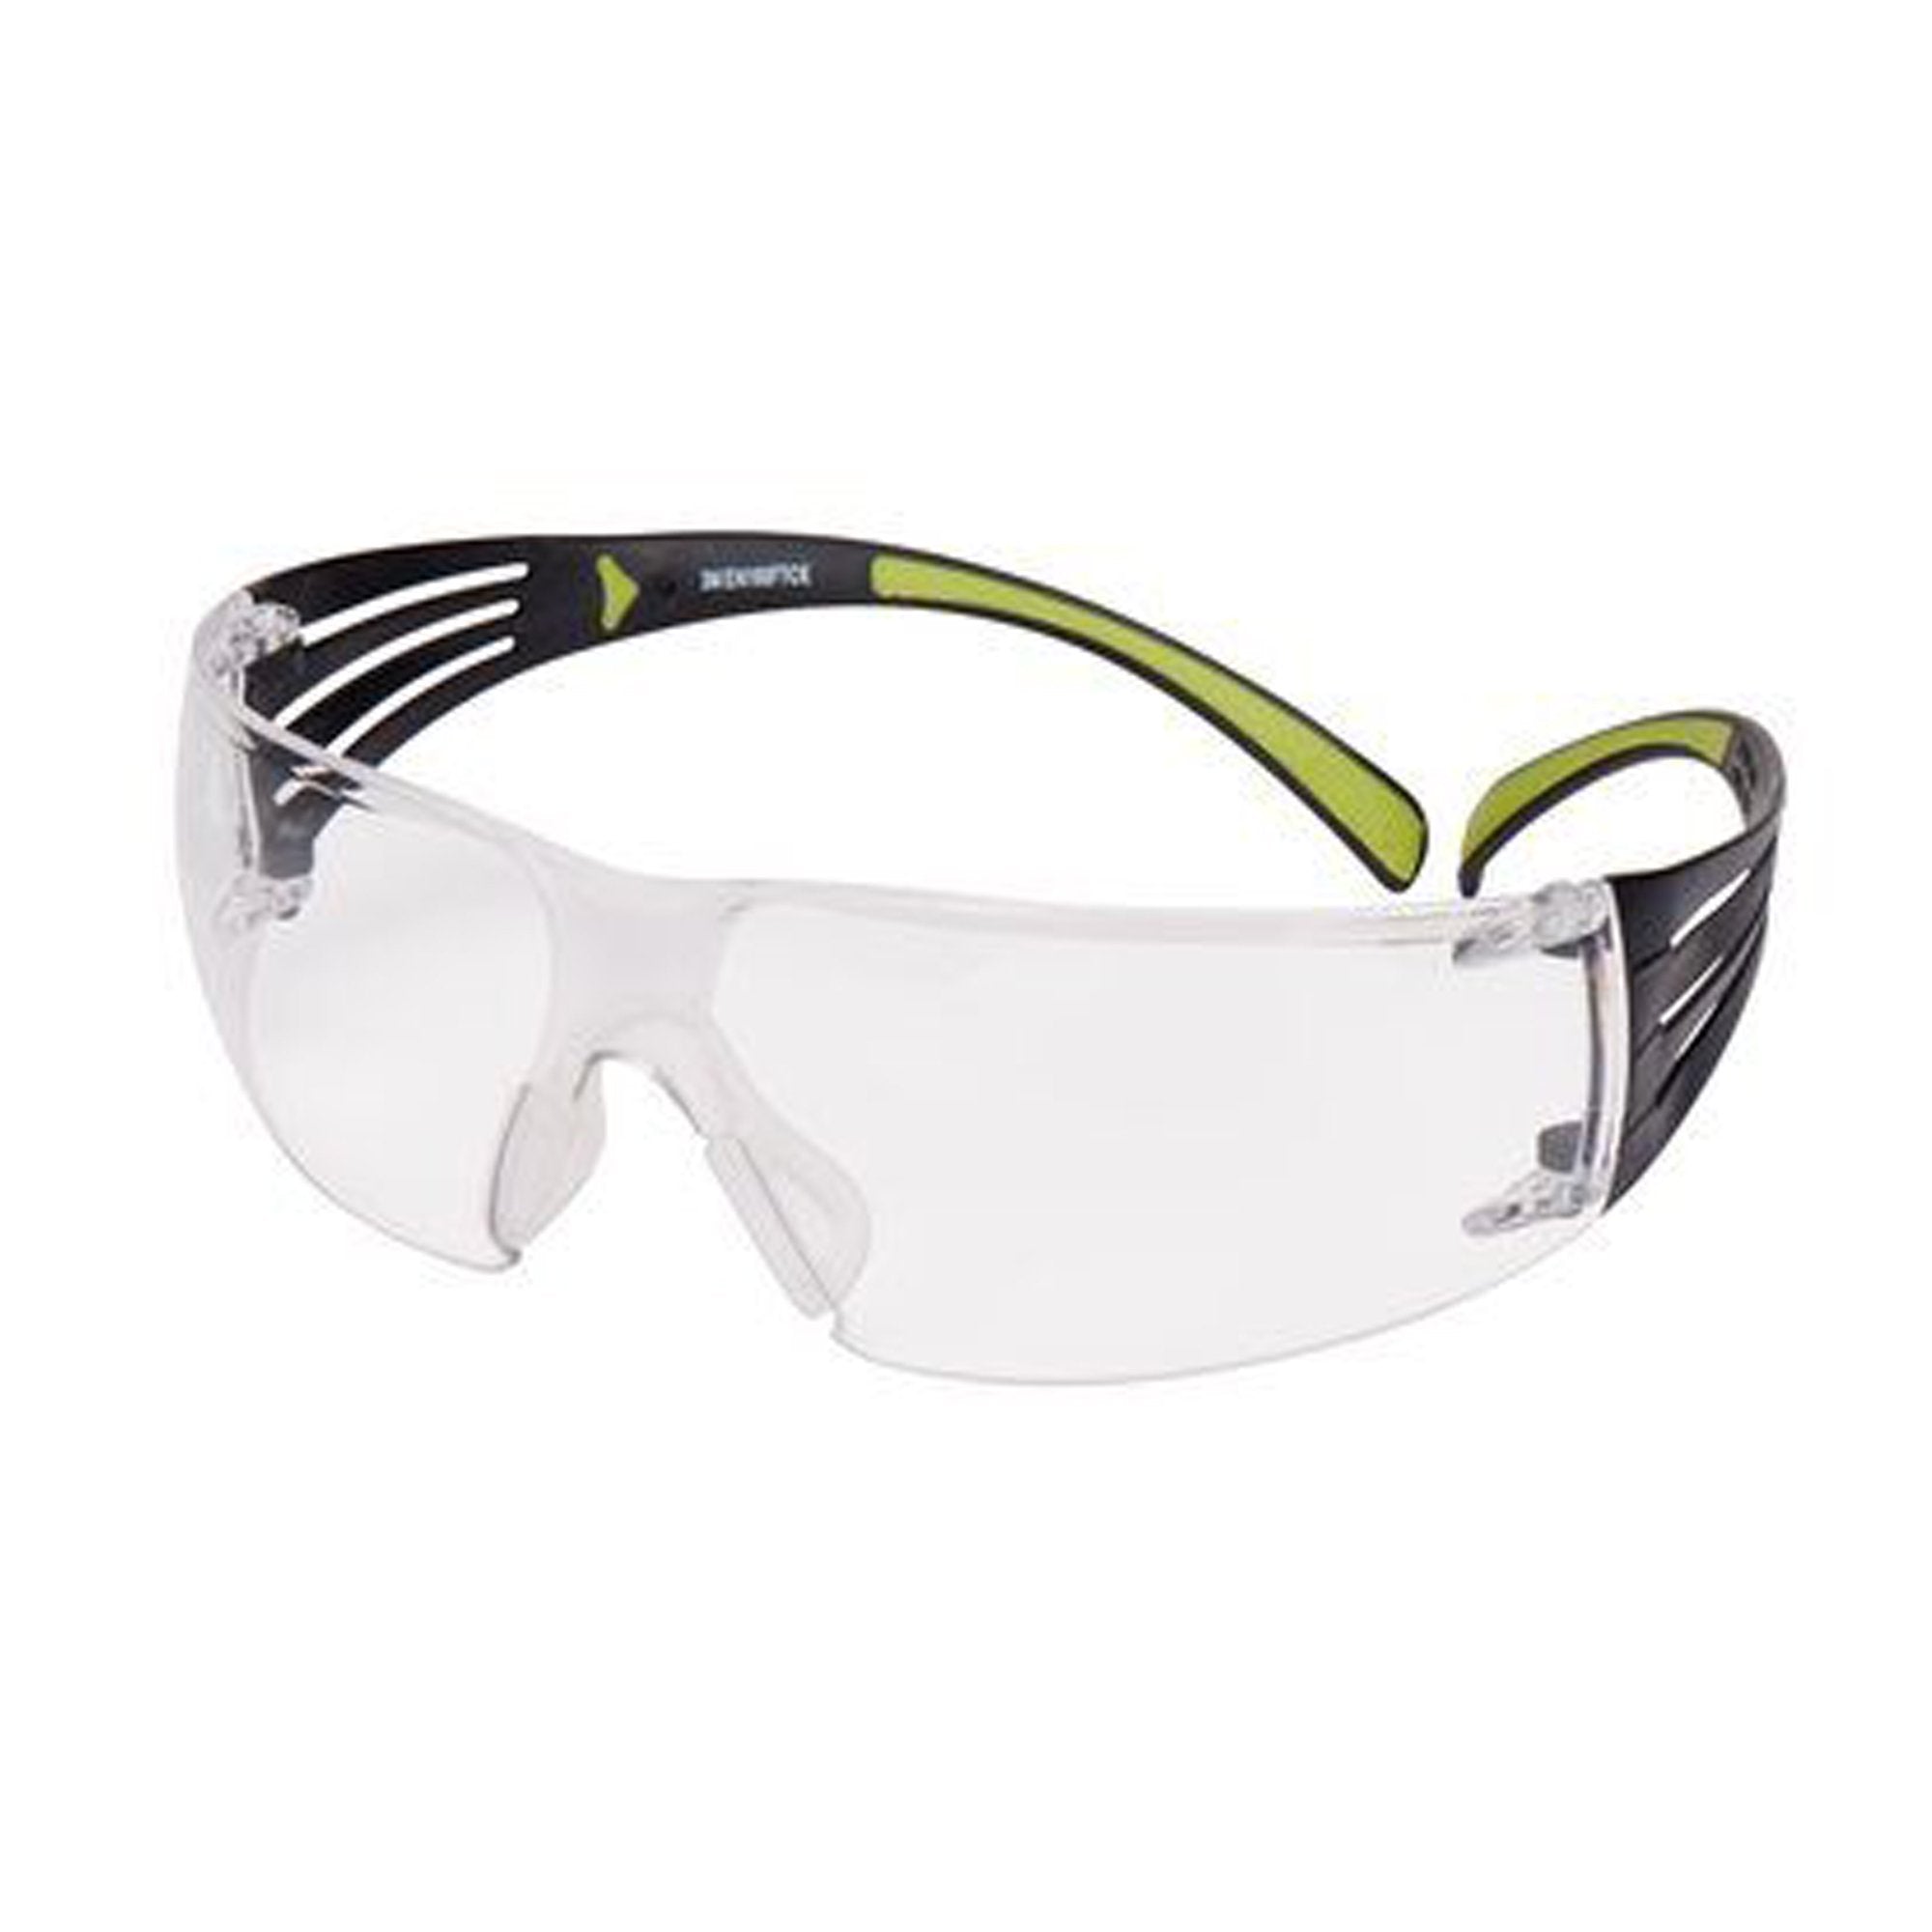 3m-occhiali-sicurezza-securefit-400-trasparenti-sf400c